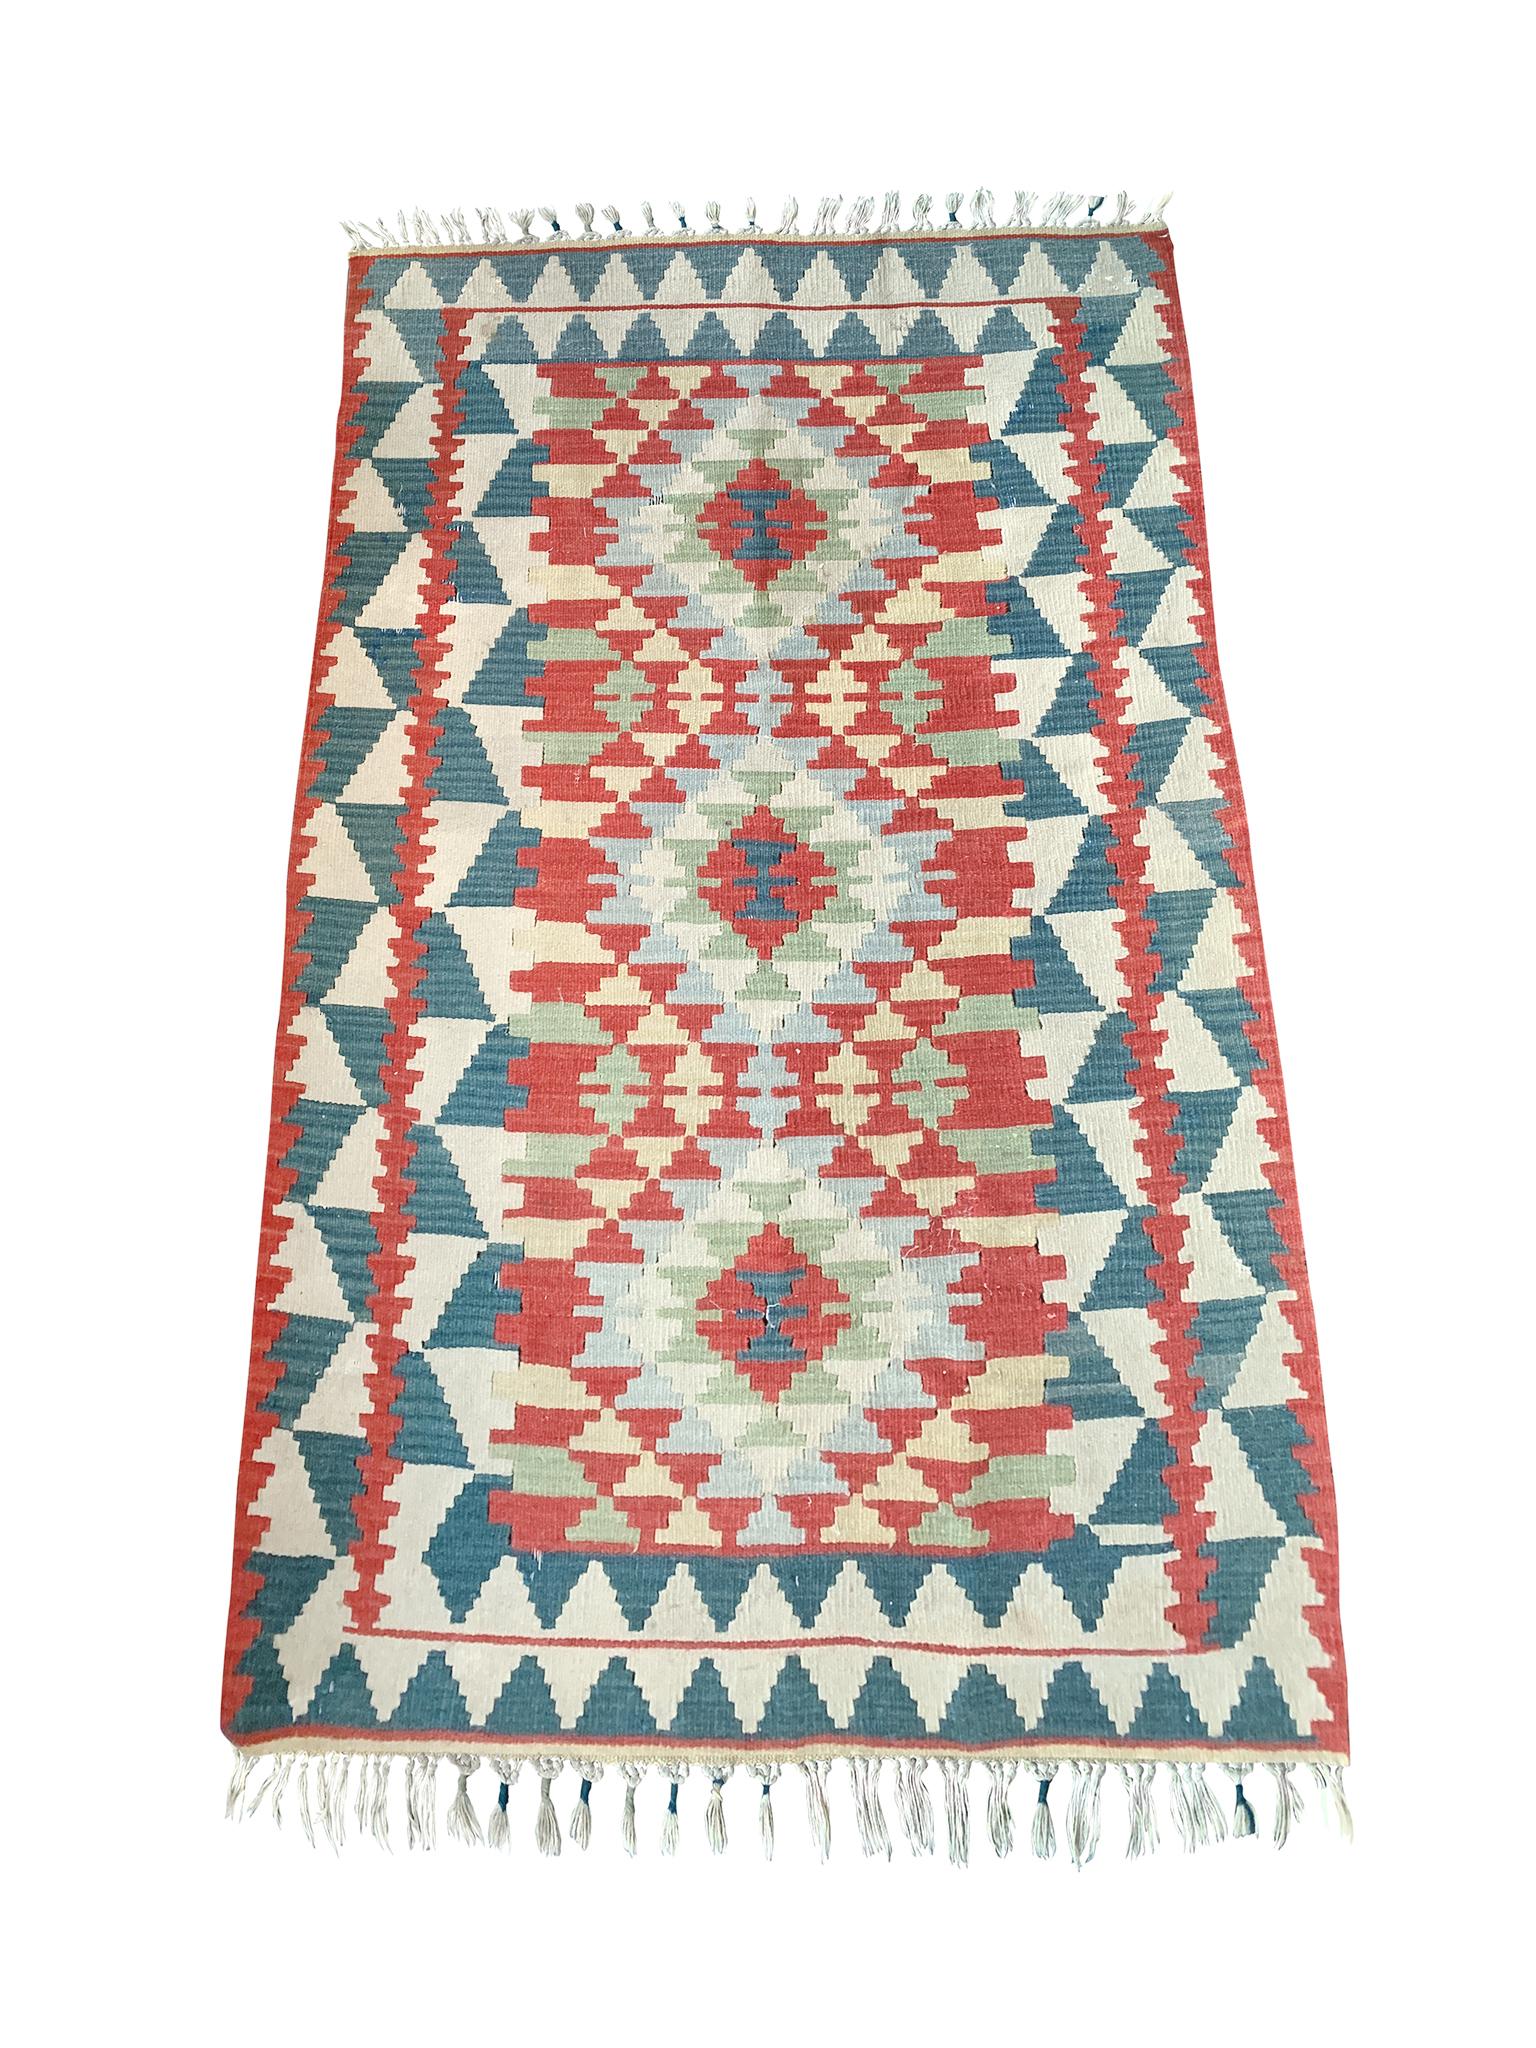 Navajo-Teppich, handgewebt im 20. Jahrhundert. Mit einer Palette aus Türkisblau, Rot, Blassgrün, Hellgelb und Elfenbein.

Abmessungen:
5'9